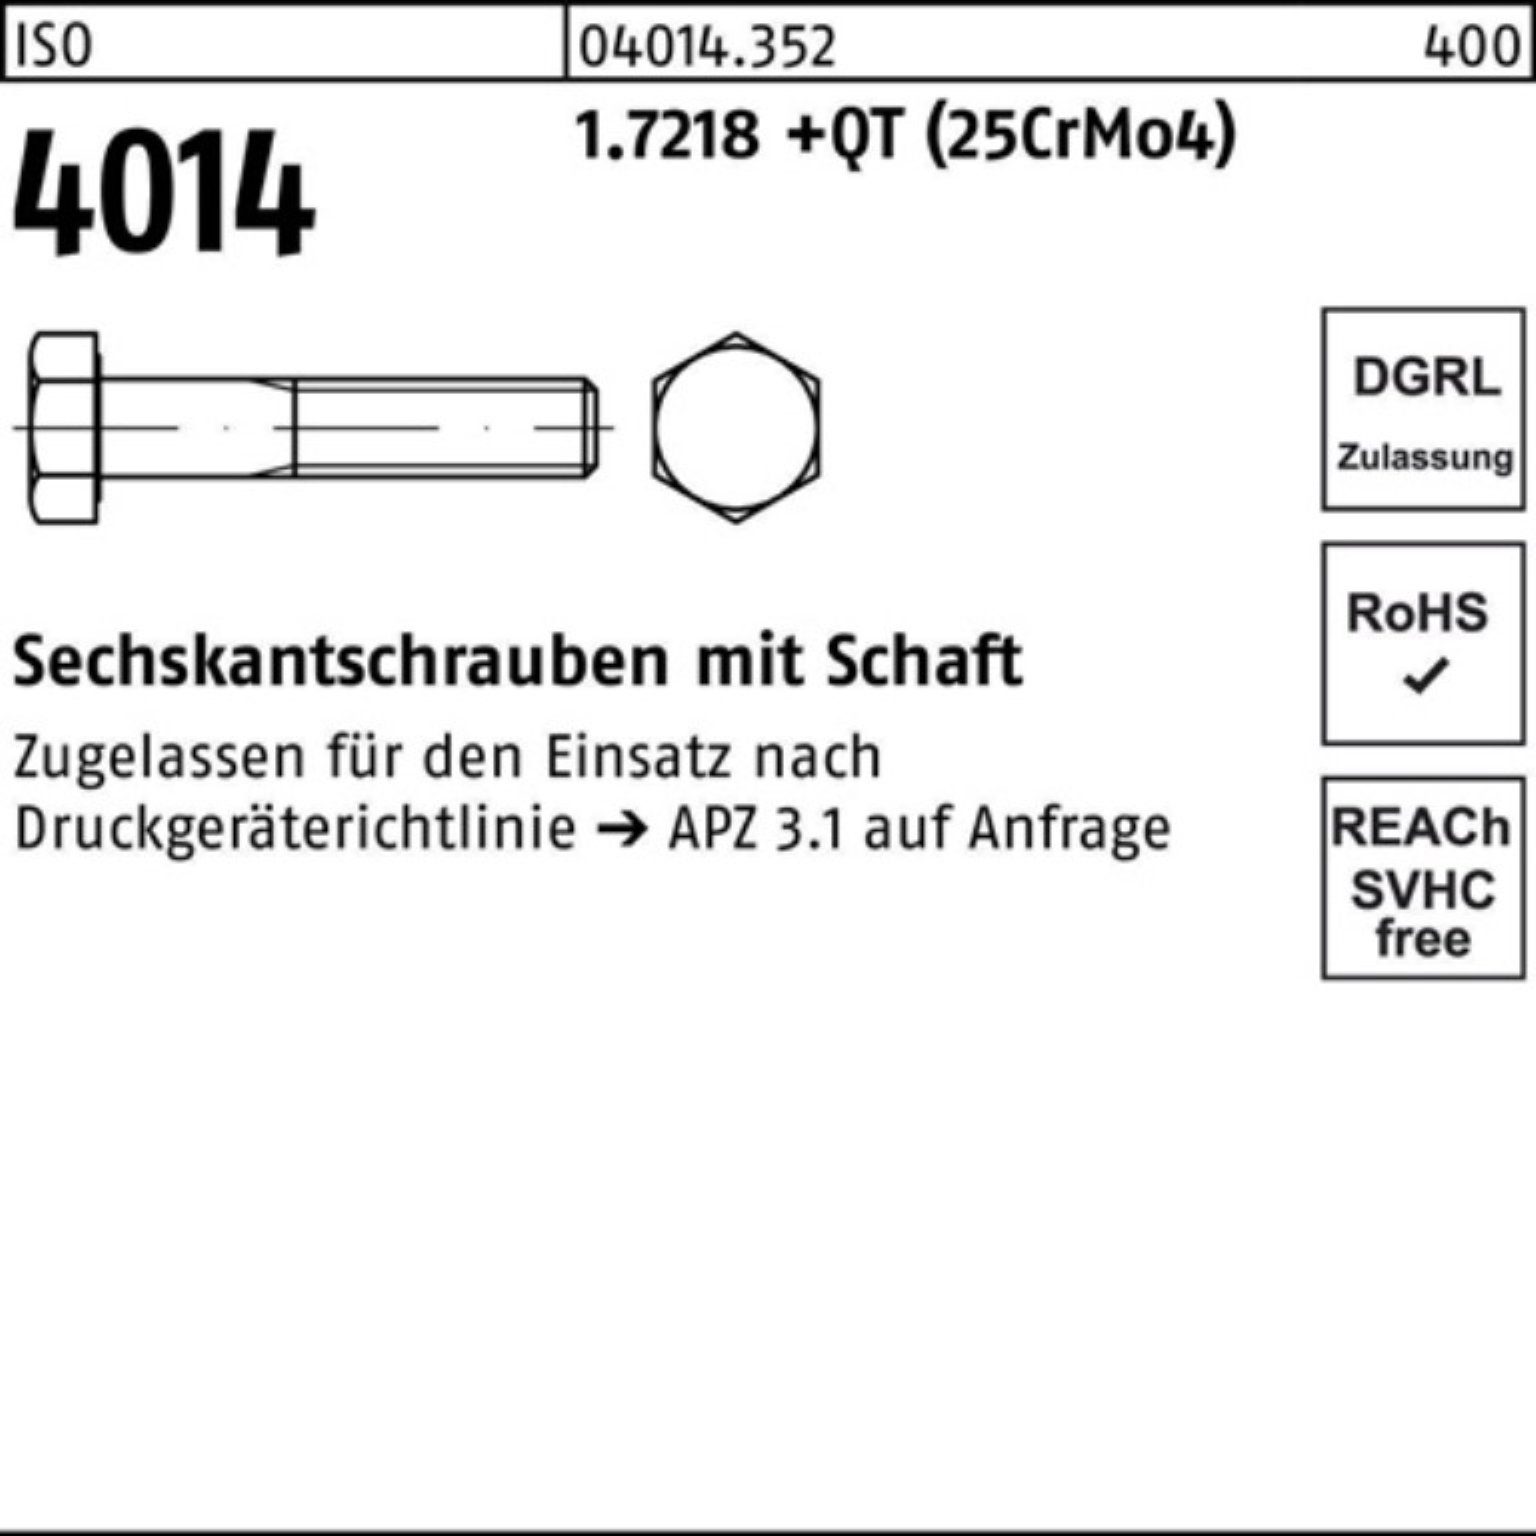 Bufab Sechskantschraube 100er (25Cr 150 Pack M27x 4014 +QT Schaft 1.7218 ISO Sechskantschraube